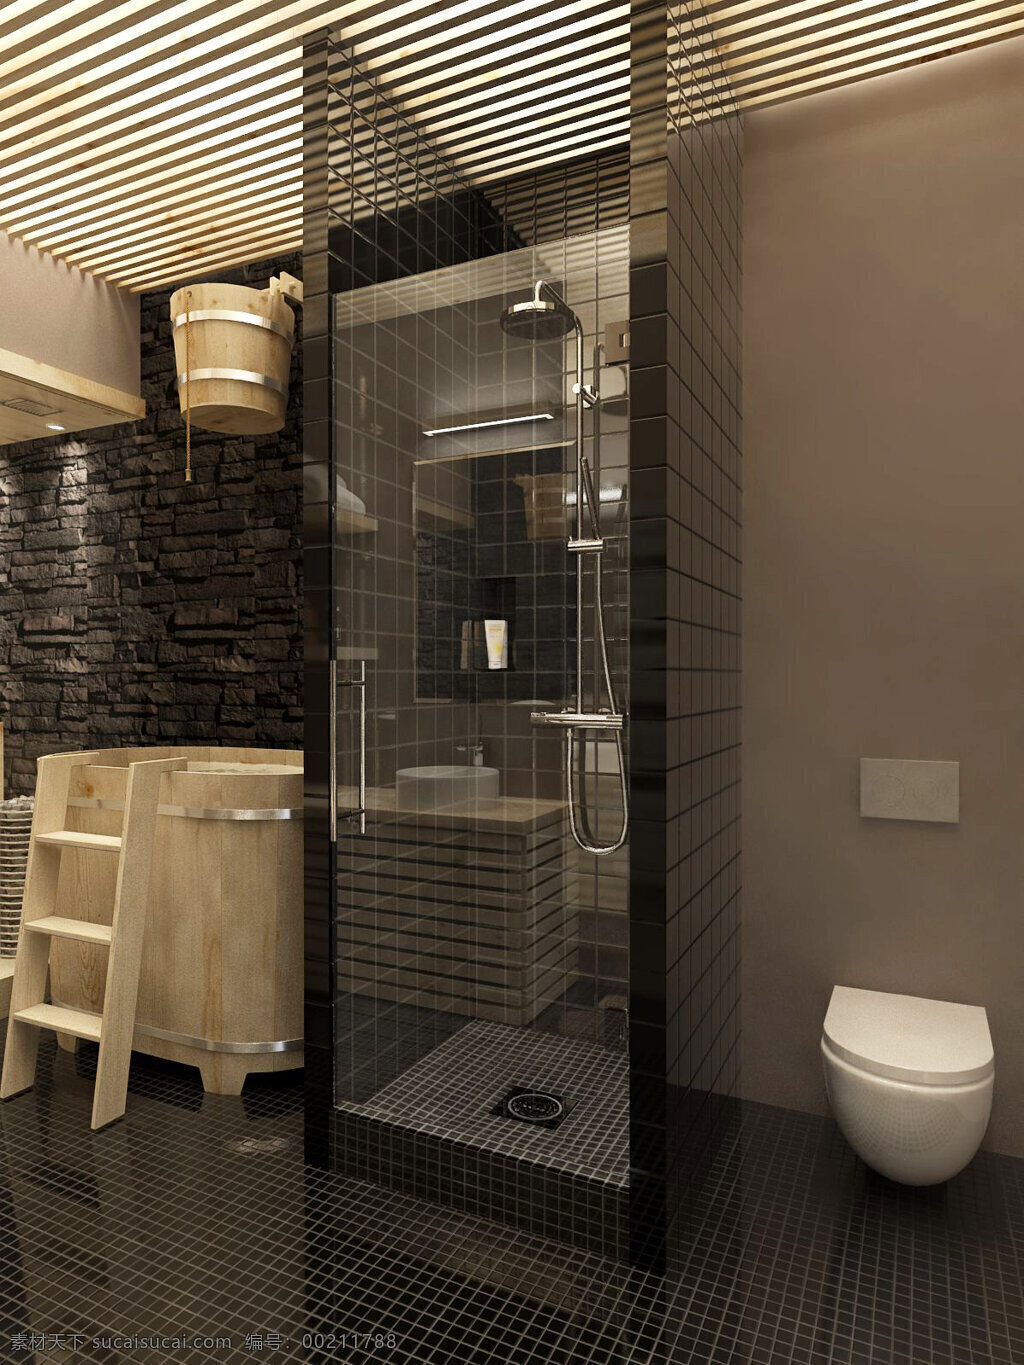 现代 精致 卫生间 褐色 背景 墙 室内装修 效果图 黑色地板 浅褐色背景墙 卫生间装修 浴室装修